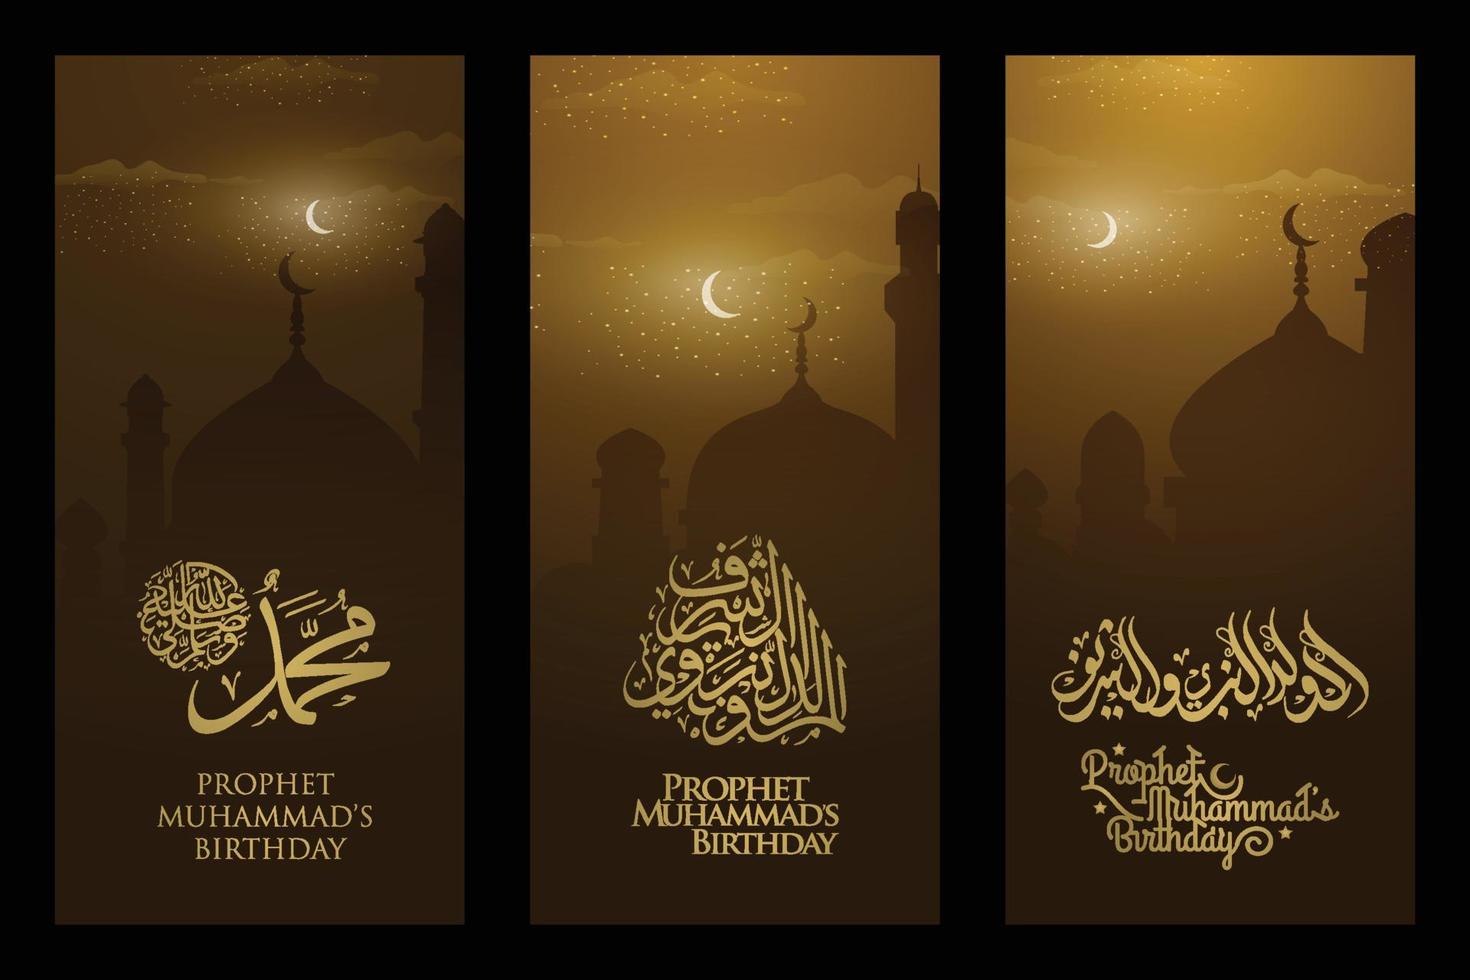 tre set mawlid al-nabi saluto illustrazione islamica sfondo disegno vettoriale con calligrafia araba e moschea per carta, banner, carta da parati, copertina. la media è il compleanno del profeta Maometto